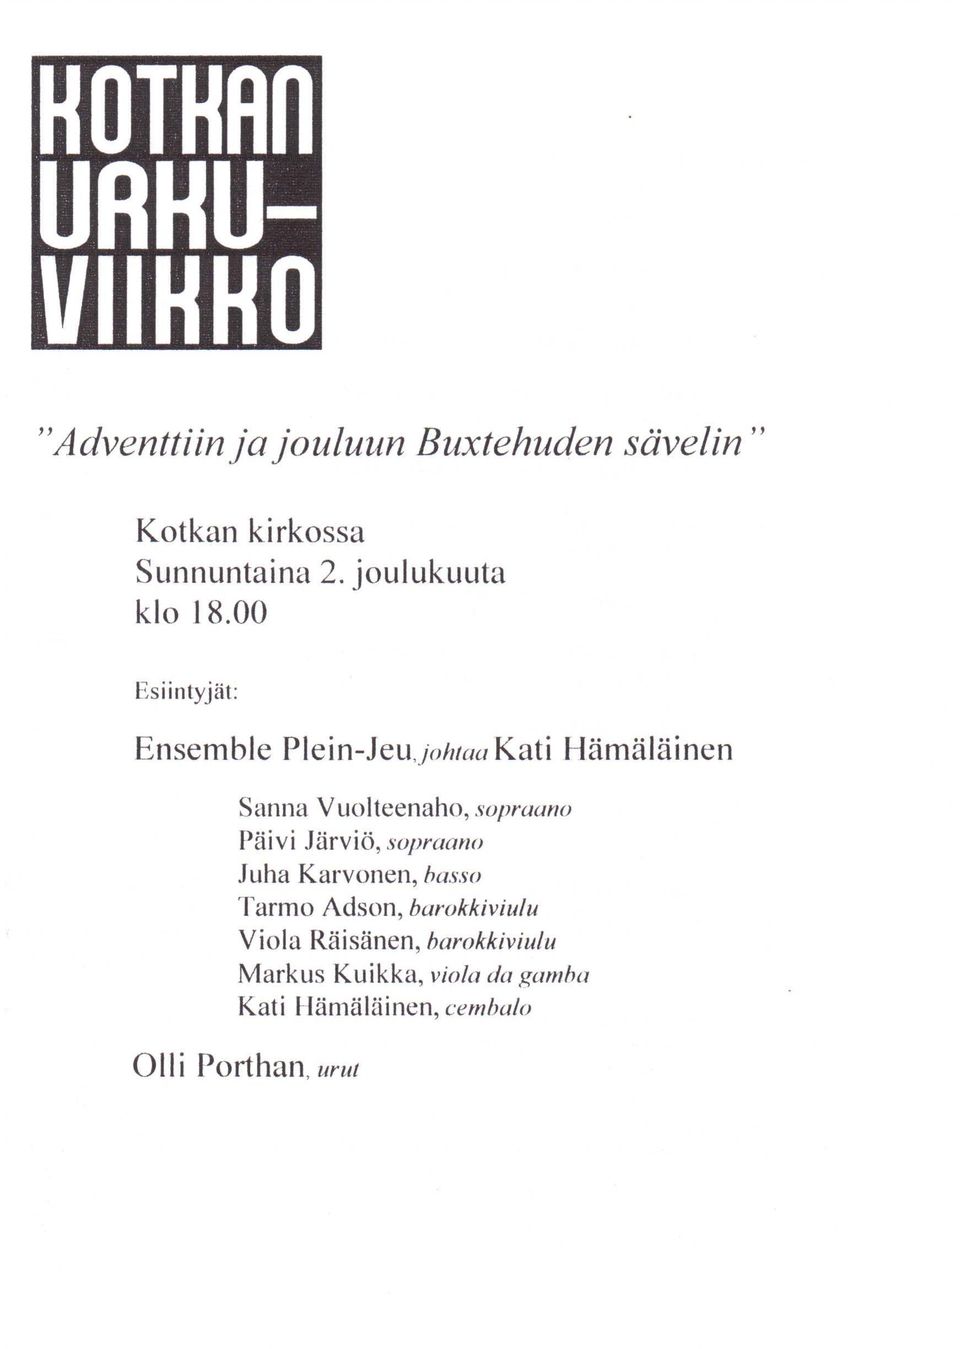 00 Esiintyjät: Ensemble Plein-Jeu,johtaa Kati Hämäläinen Sanna Vuolteenaho, sopraano